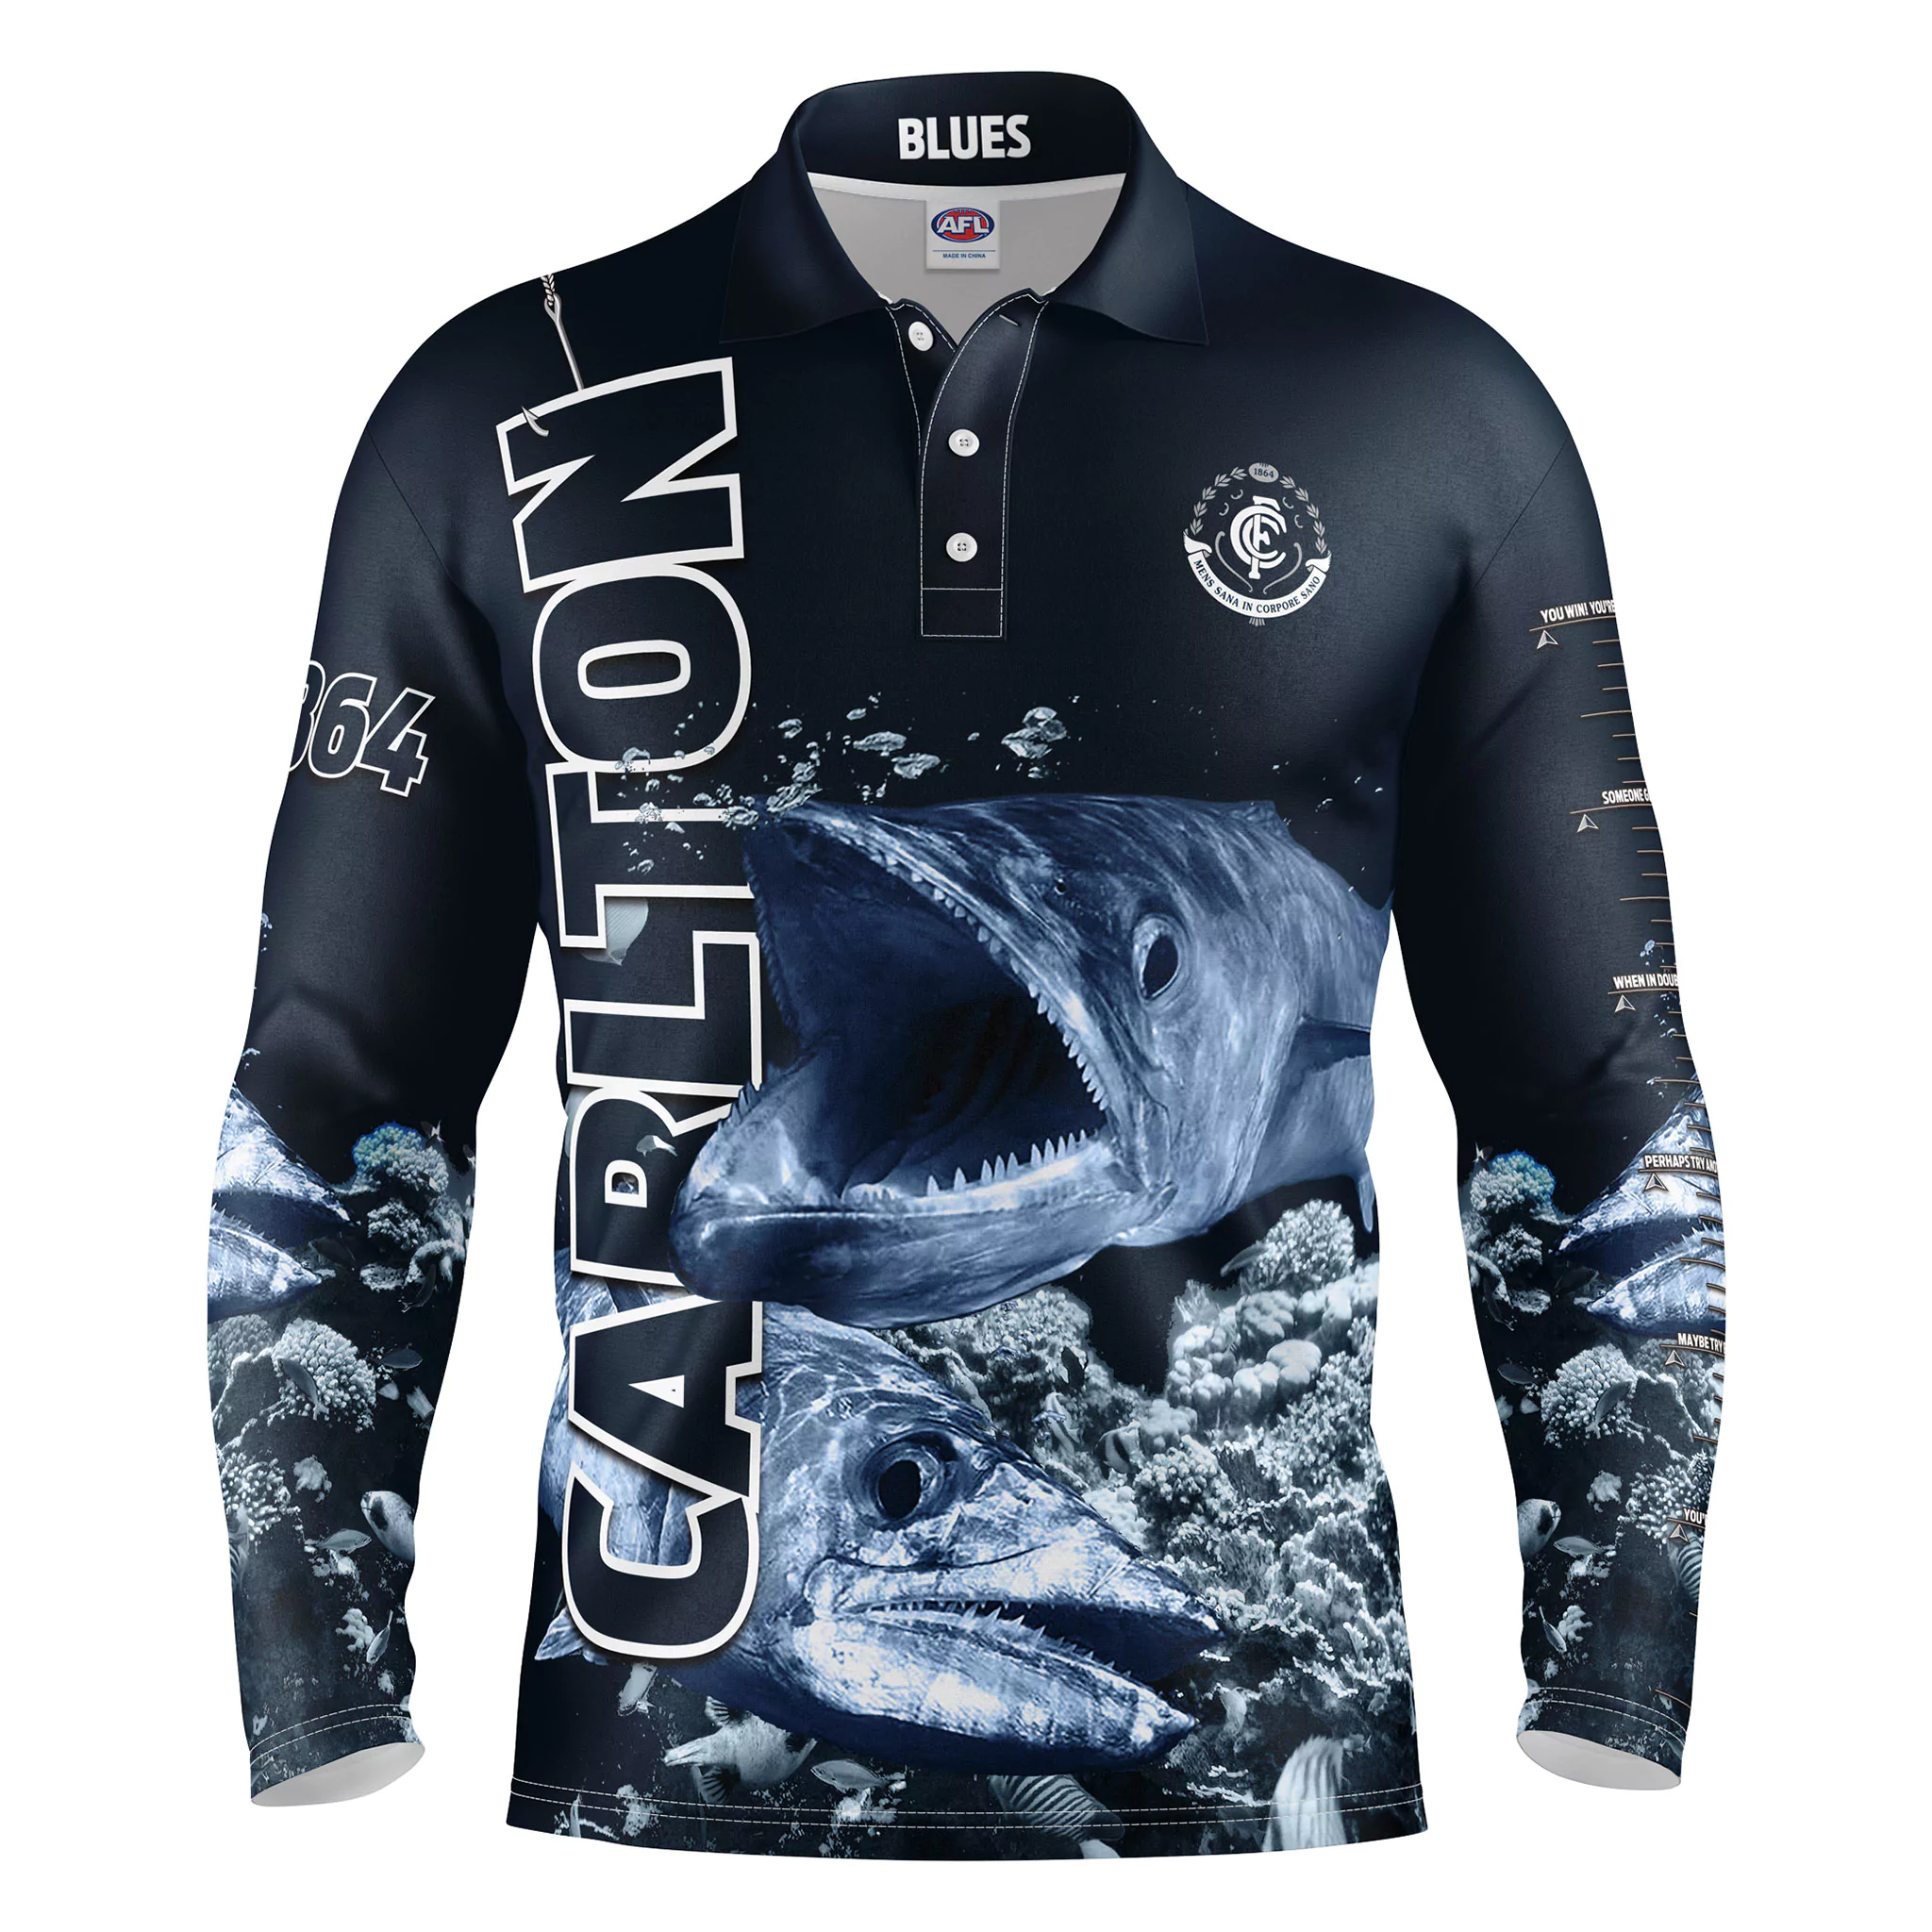 Buy 2019 Carlton Blues Fishing Shirt - Youth - Your Jersey